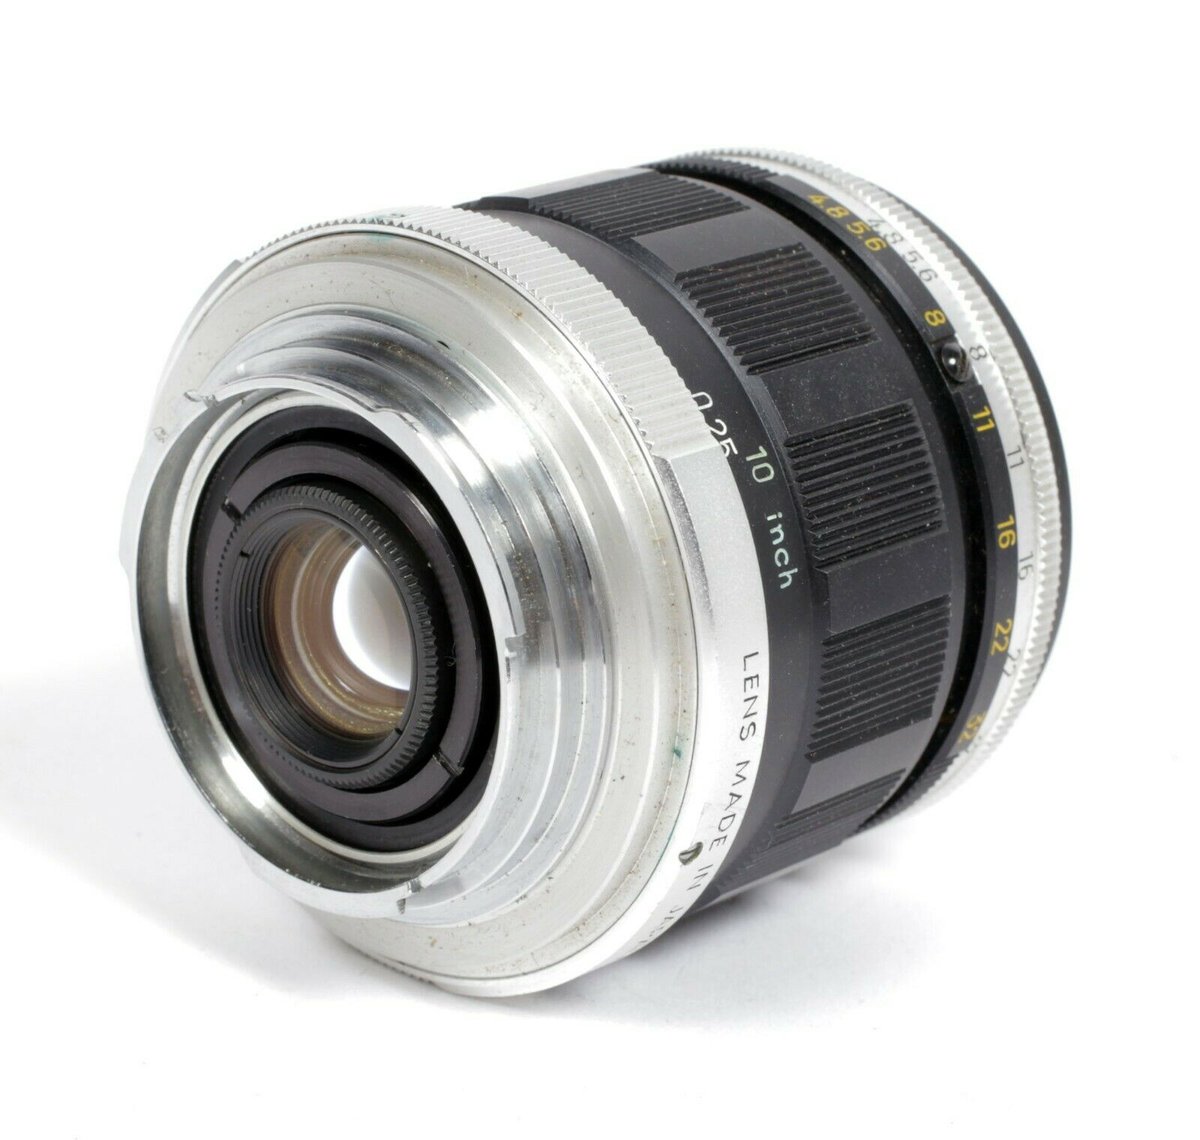 Minolta Macro Rokkor QF 50mm F3.5 MD lens